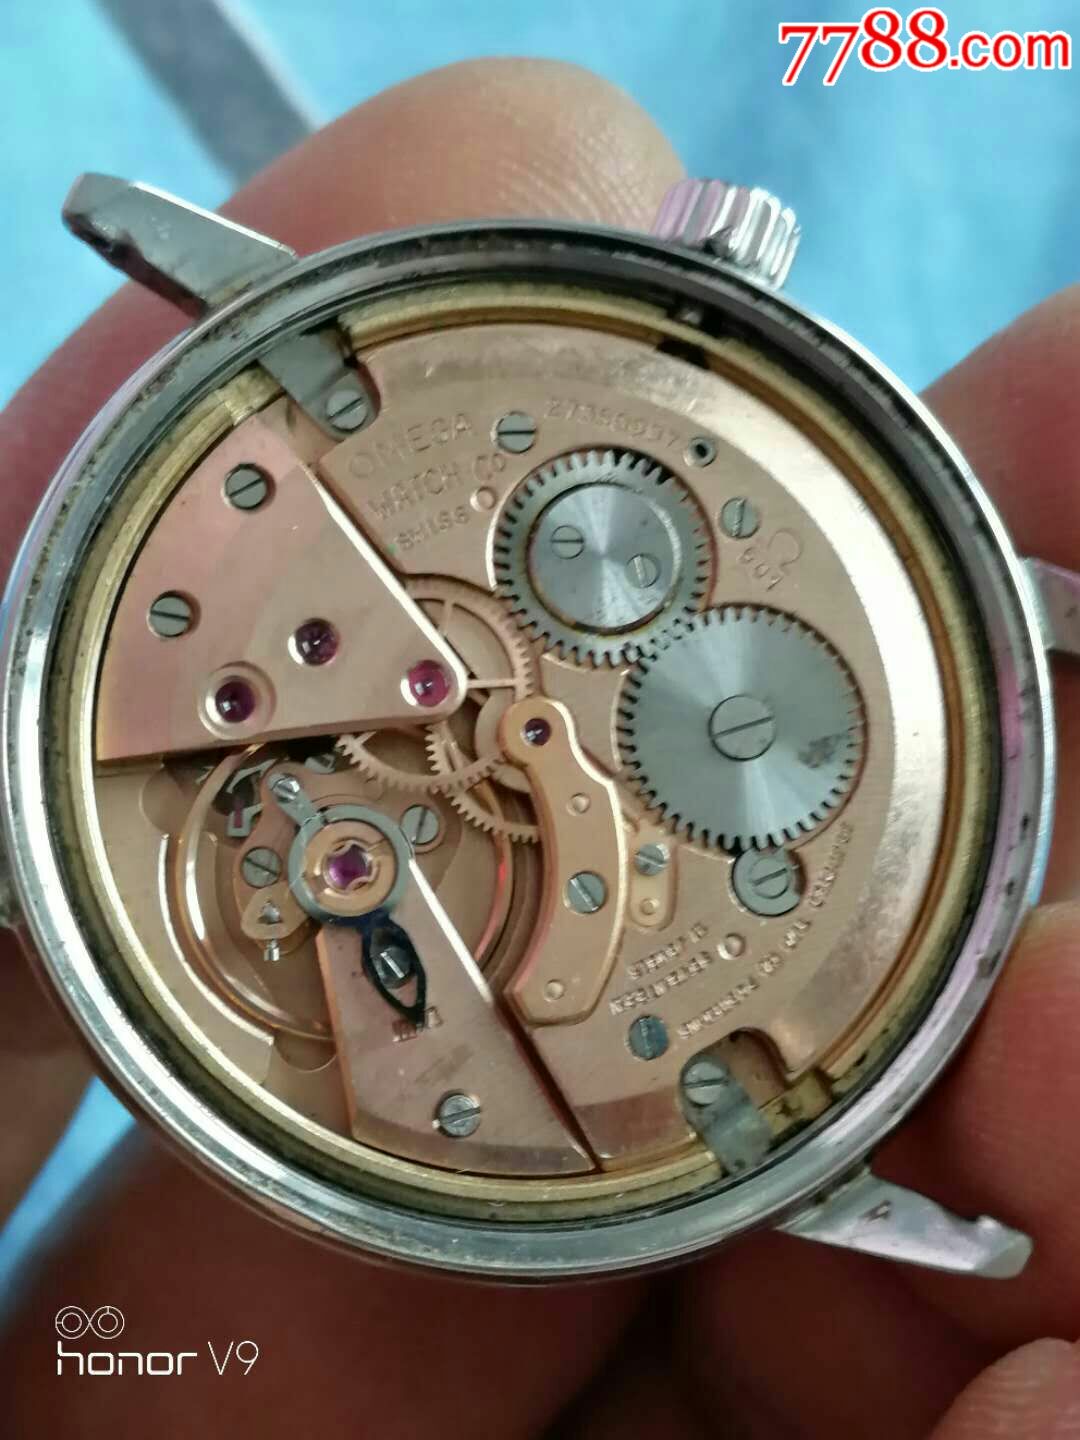 老式欧米茄601机芯手表图片